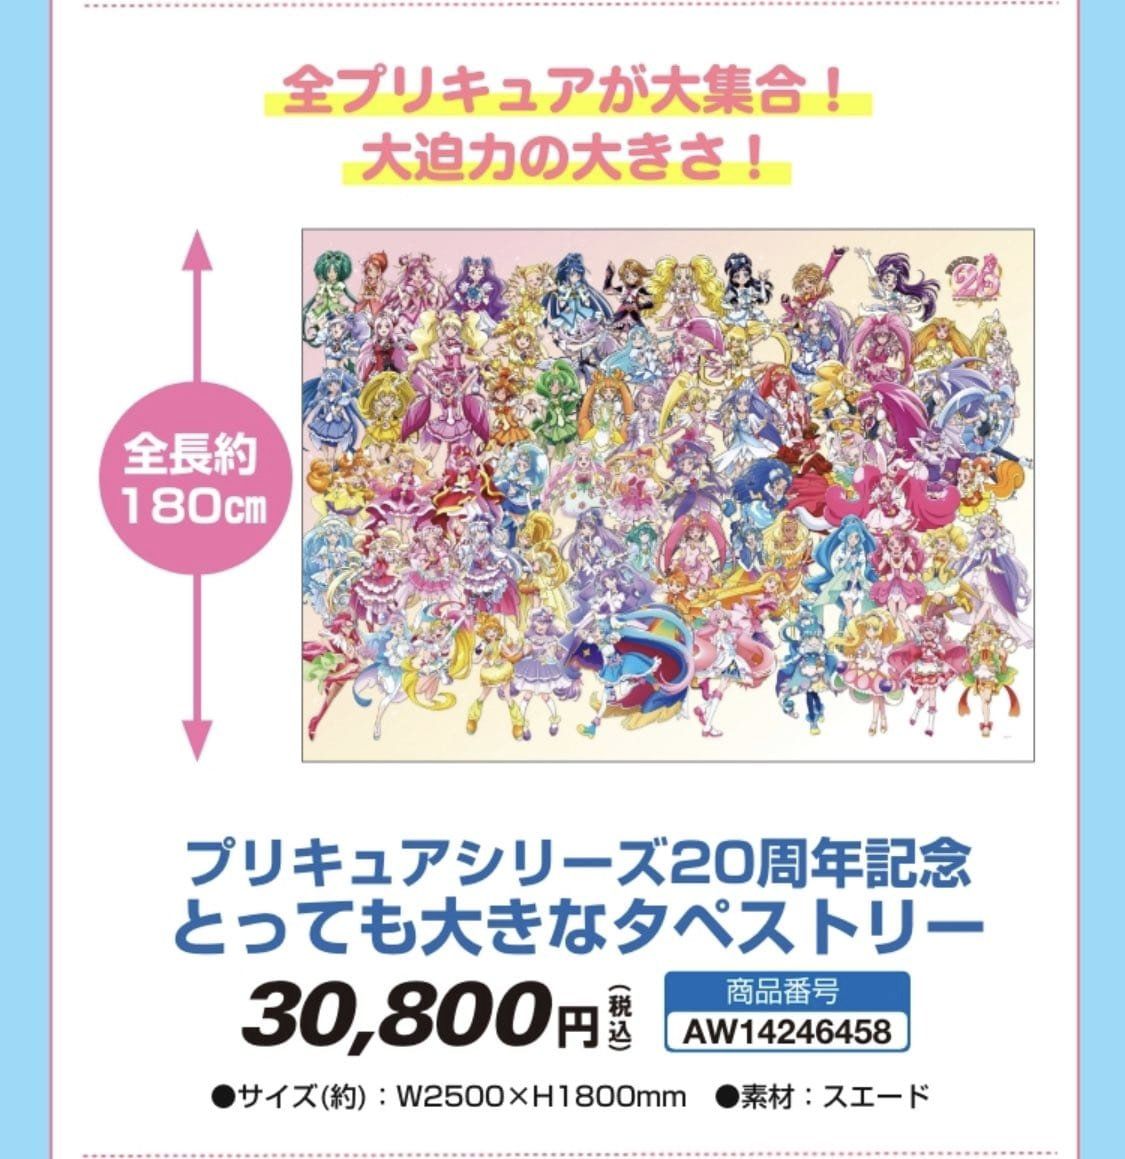 Pretty Cure 20th Anniversary Pretty Cure All Stars Postcard Book Vol.1